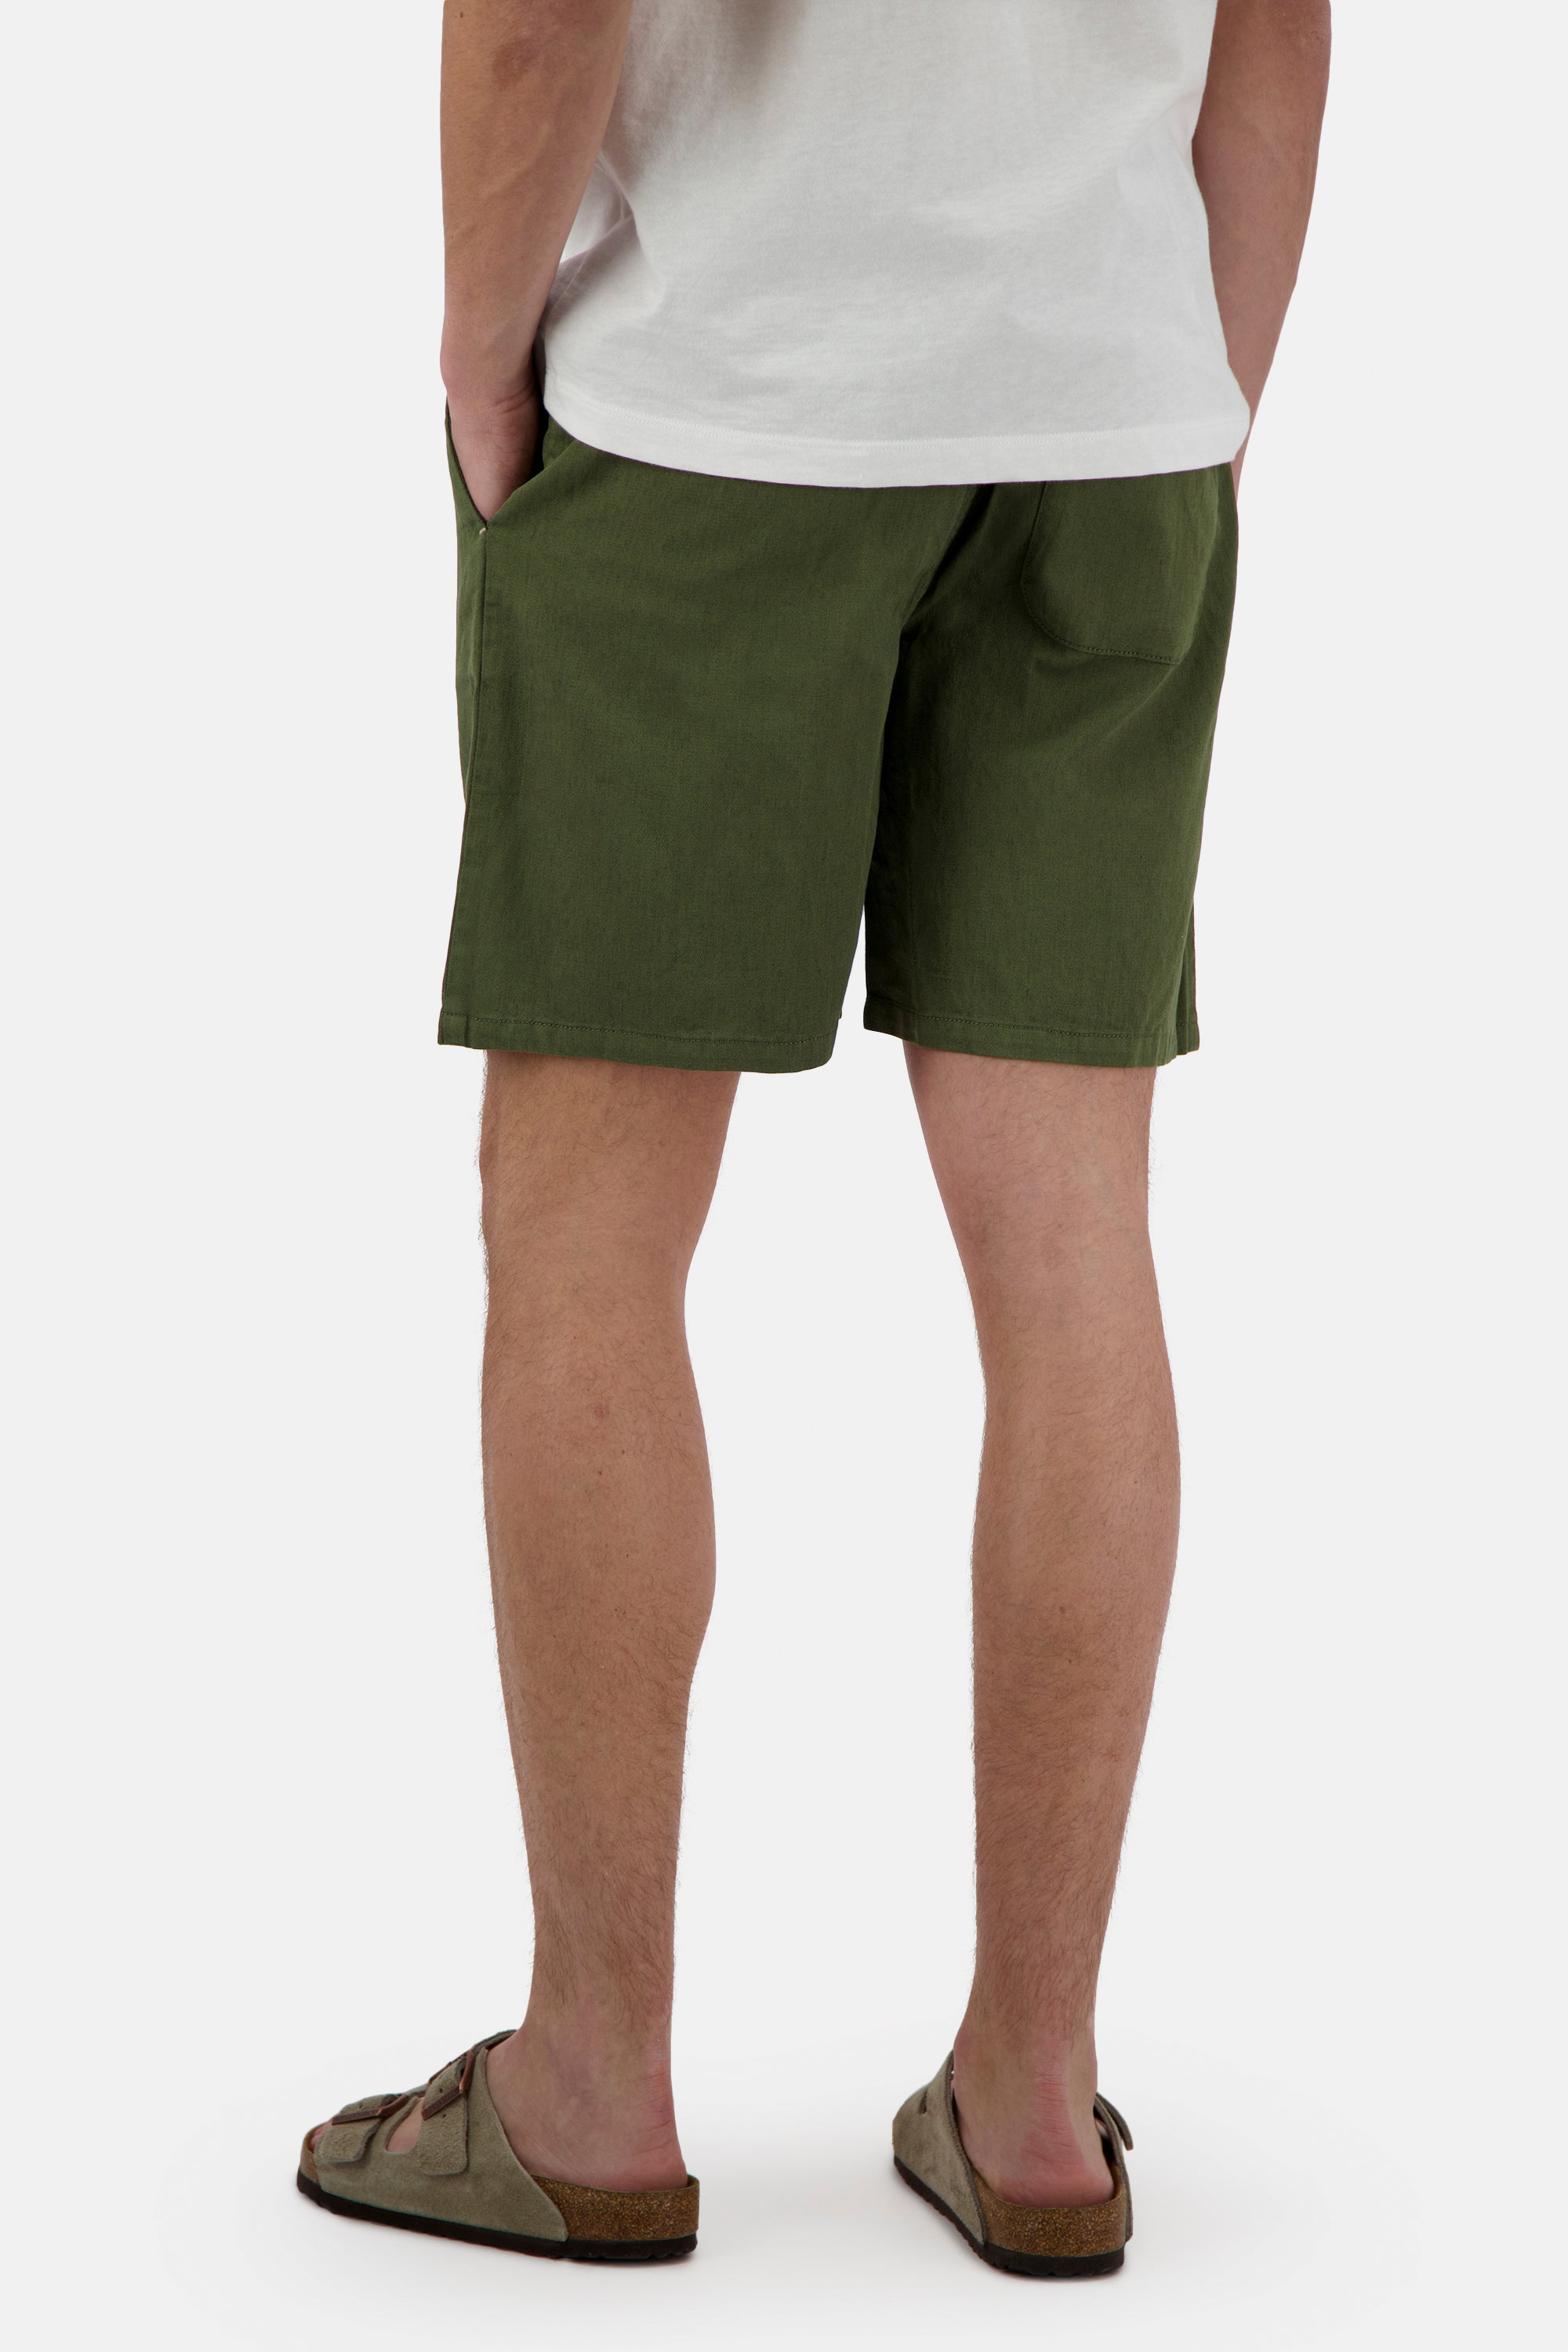 Herren Shorts, grün,  60% Baumwolle 40% Leinen von Colours & Sons